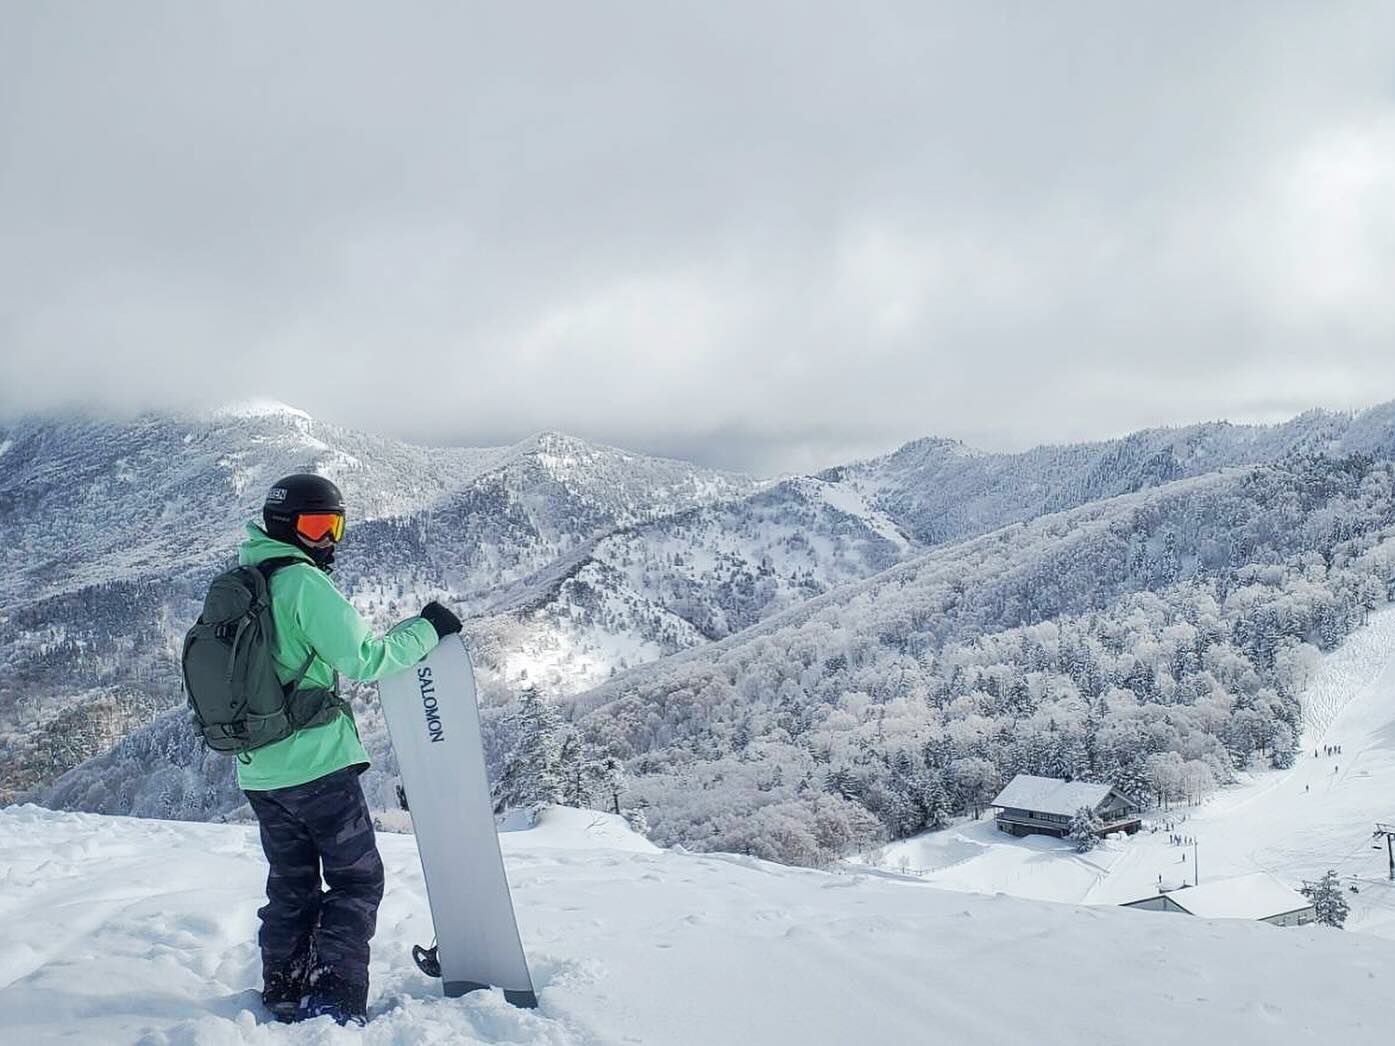 digital nomad visas - ski resort japan